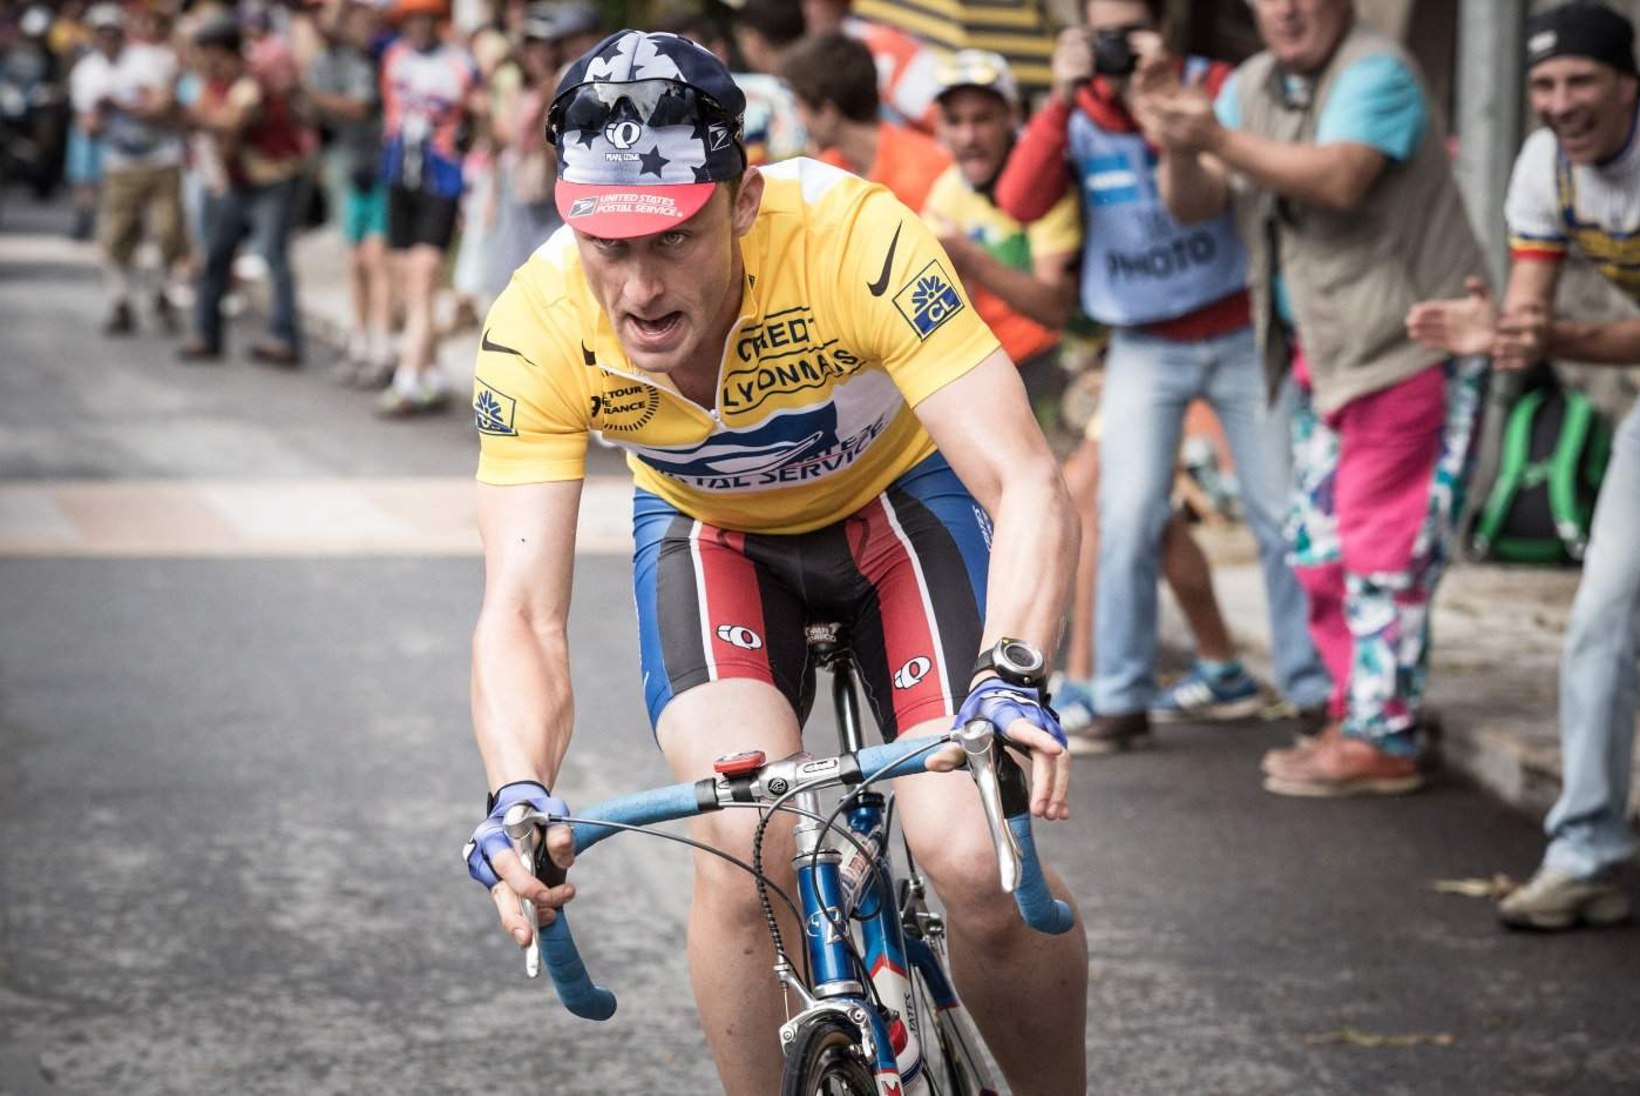 Näitleja pruukis Lance Armstrongi kehastades salaja ka ise dopingut